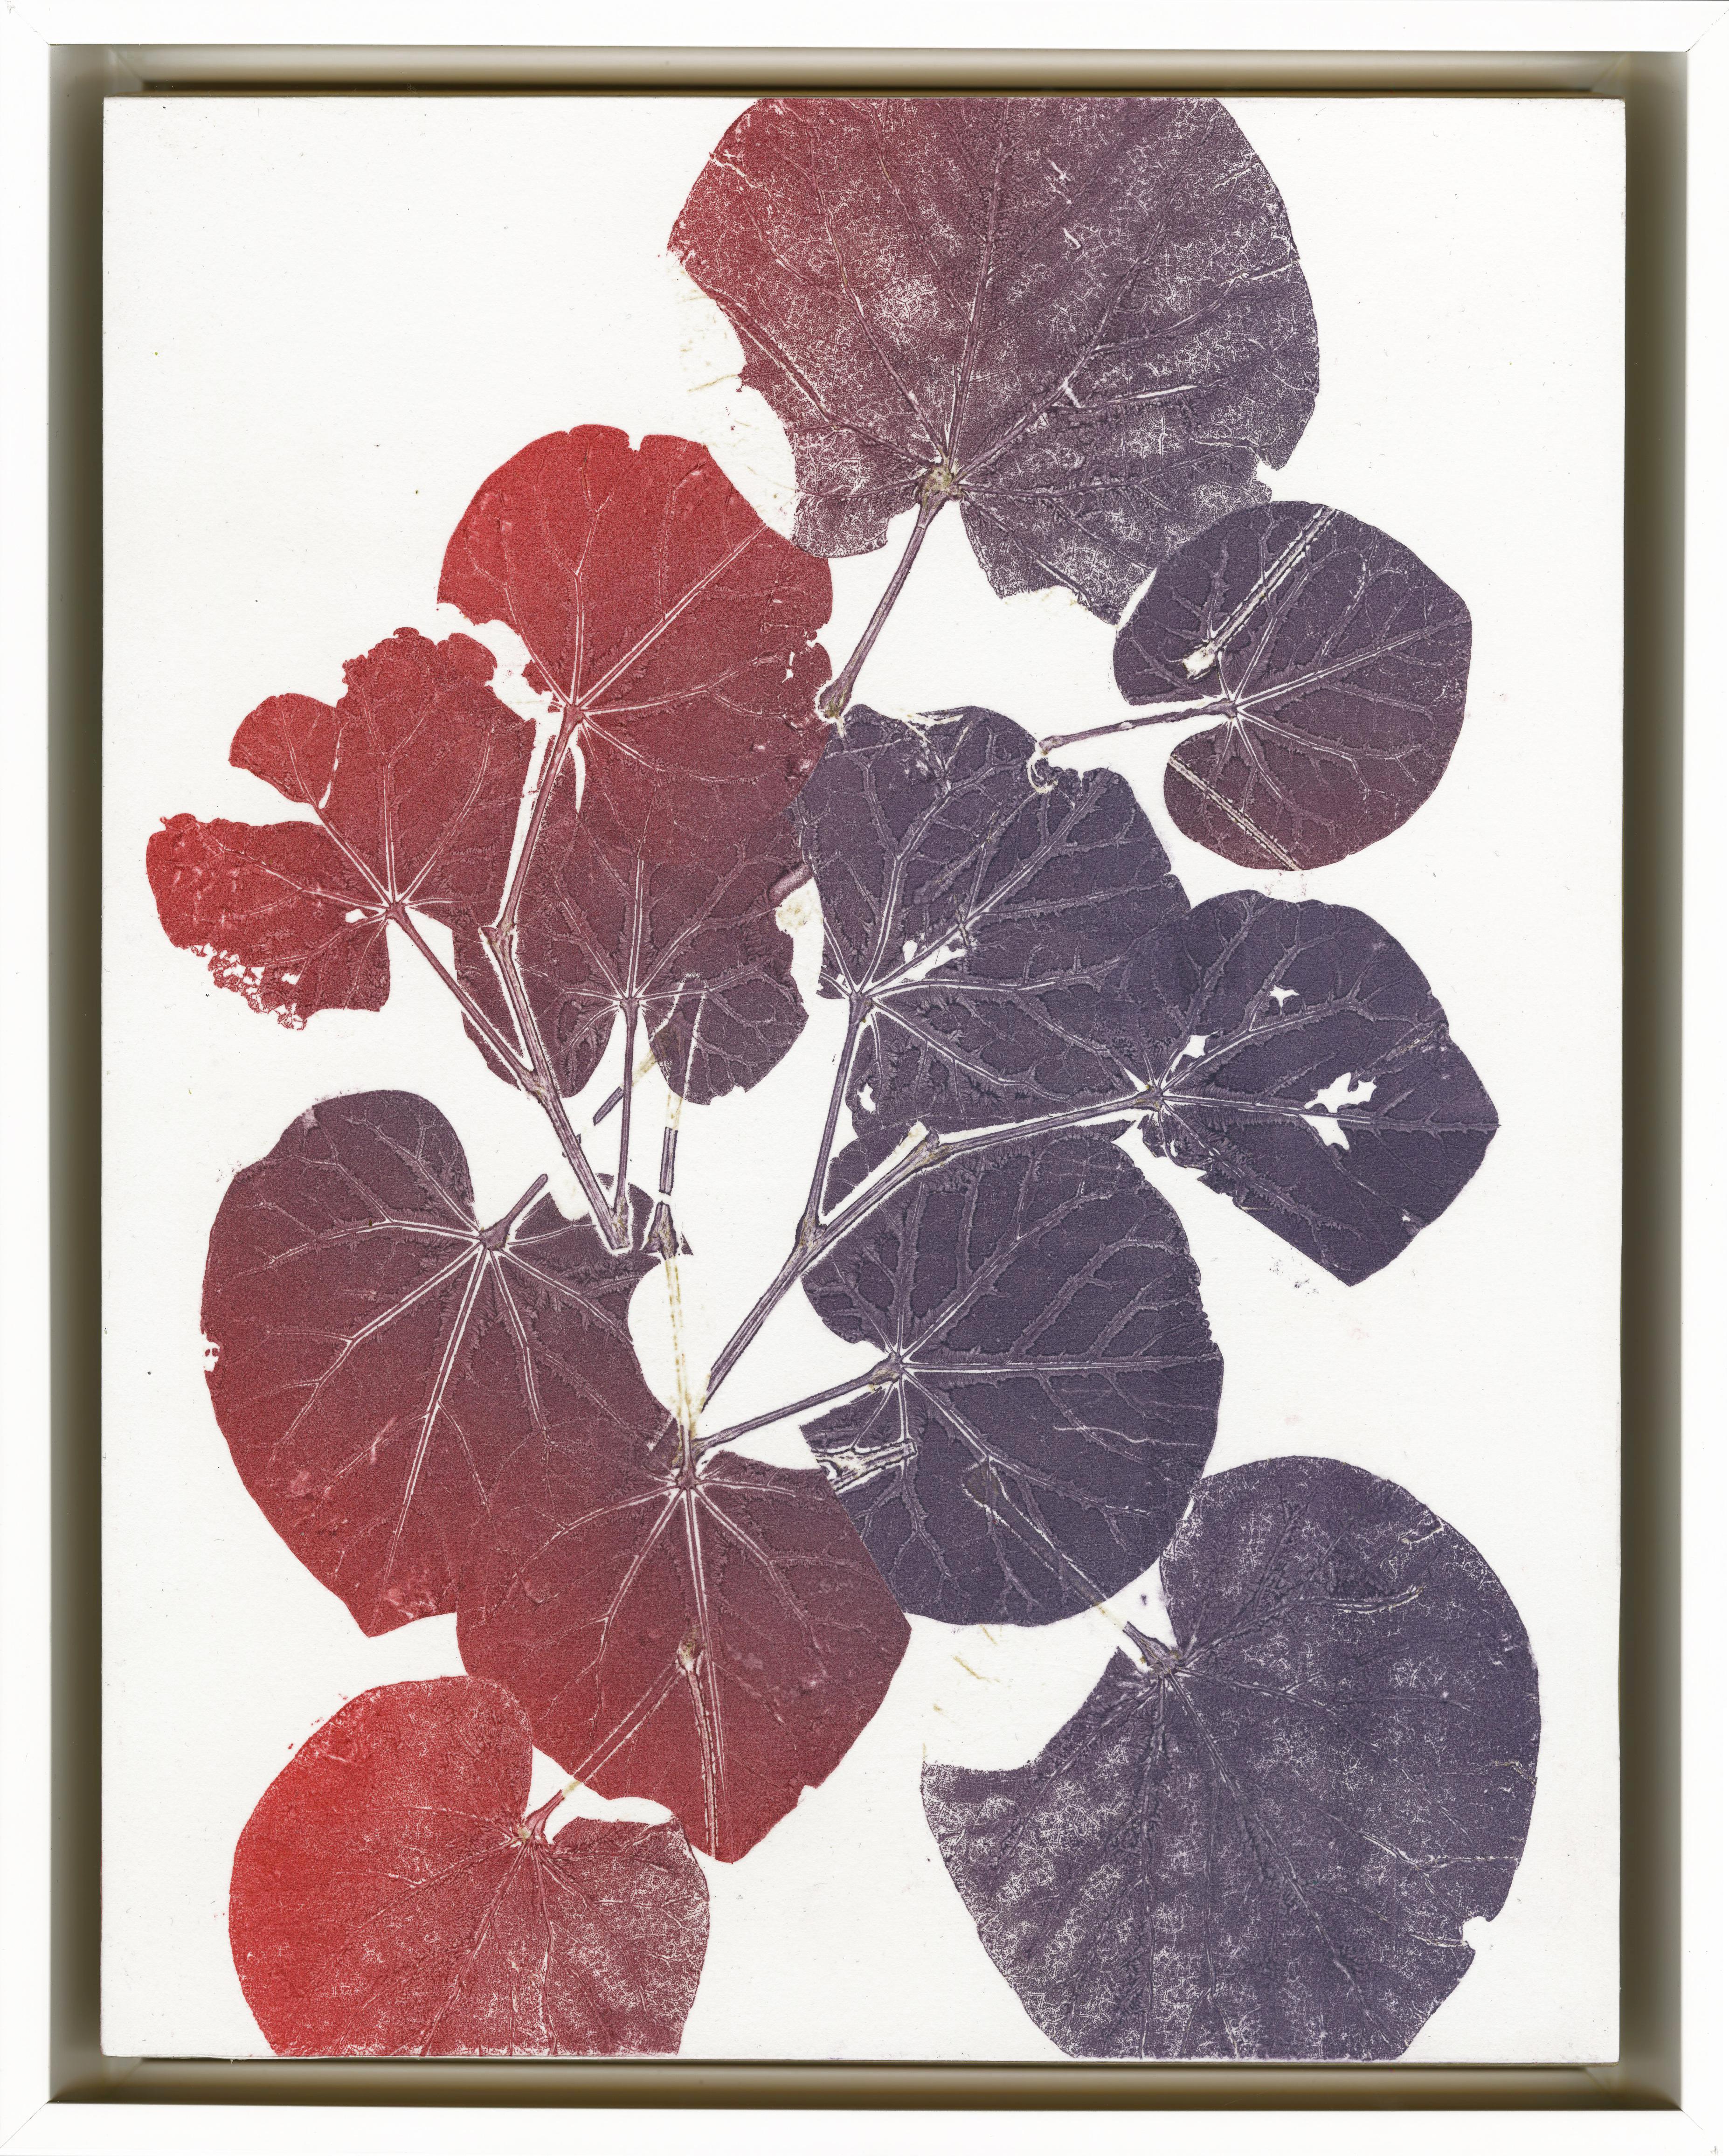 Terni 10-18/Aster Leaf, Grass and Moonwort in Violet + Scarlet - Brown Landscape Print by Nina Tichava